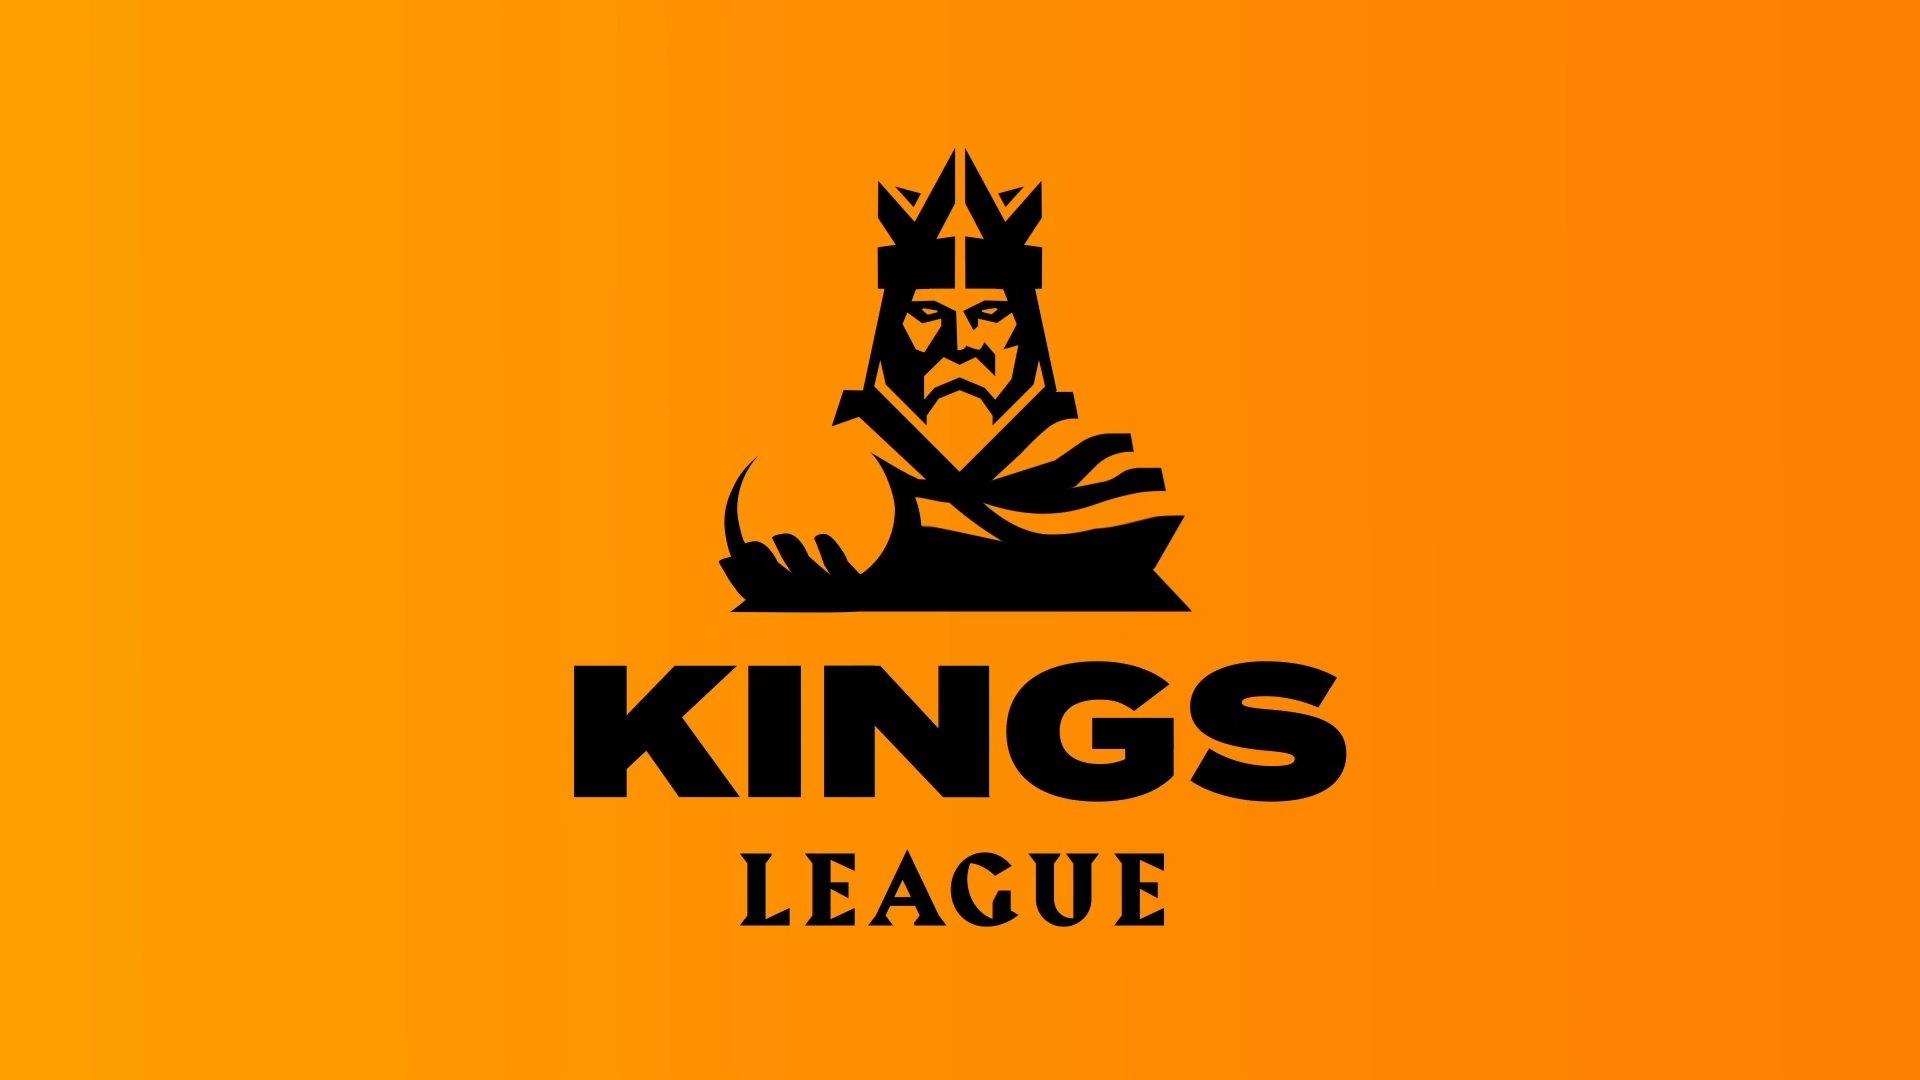 La Kings League nos presenta sus normas para la competición